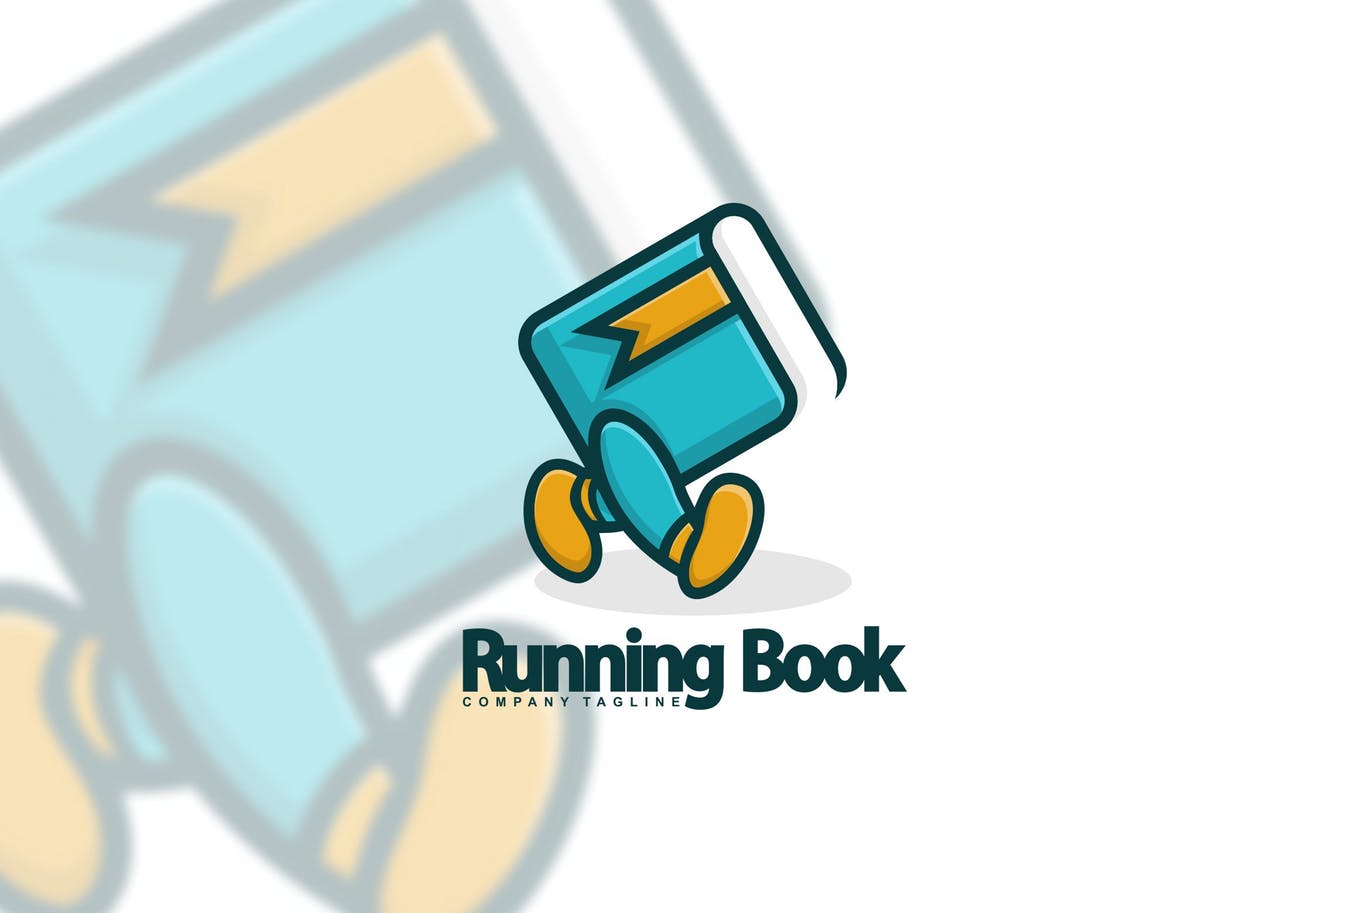 图书出版图书阅读主题“会行走”的书Logo设计第一素材精选模板 Running Book插图